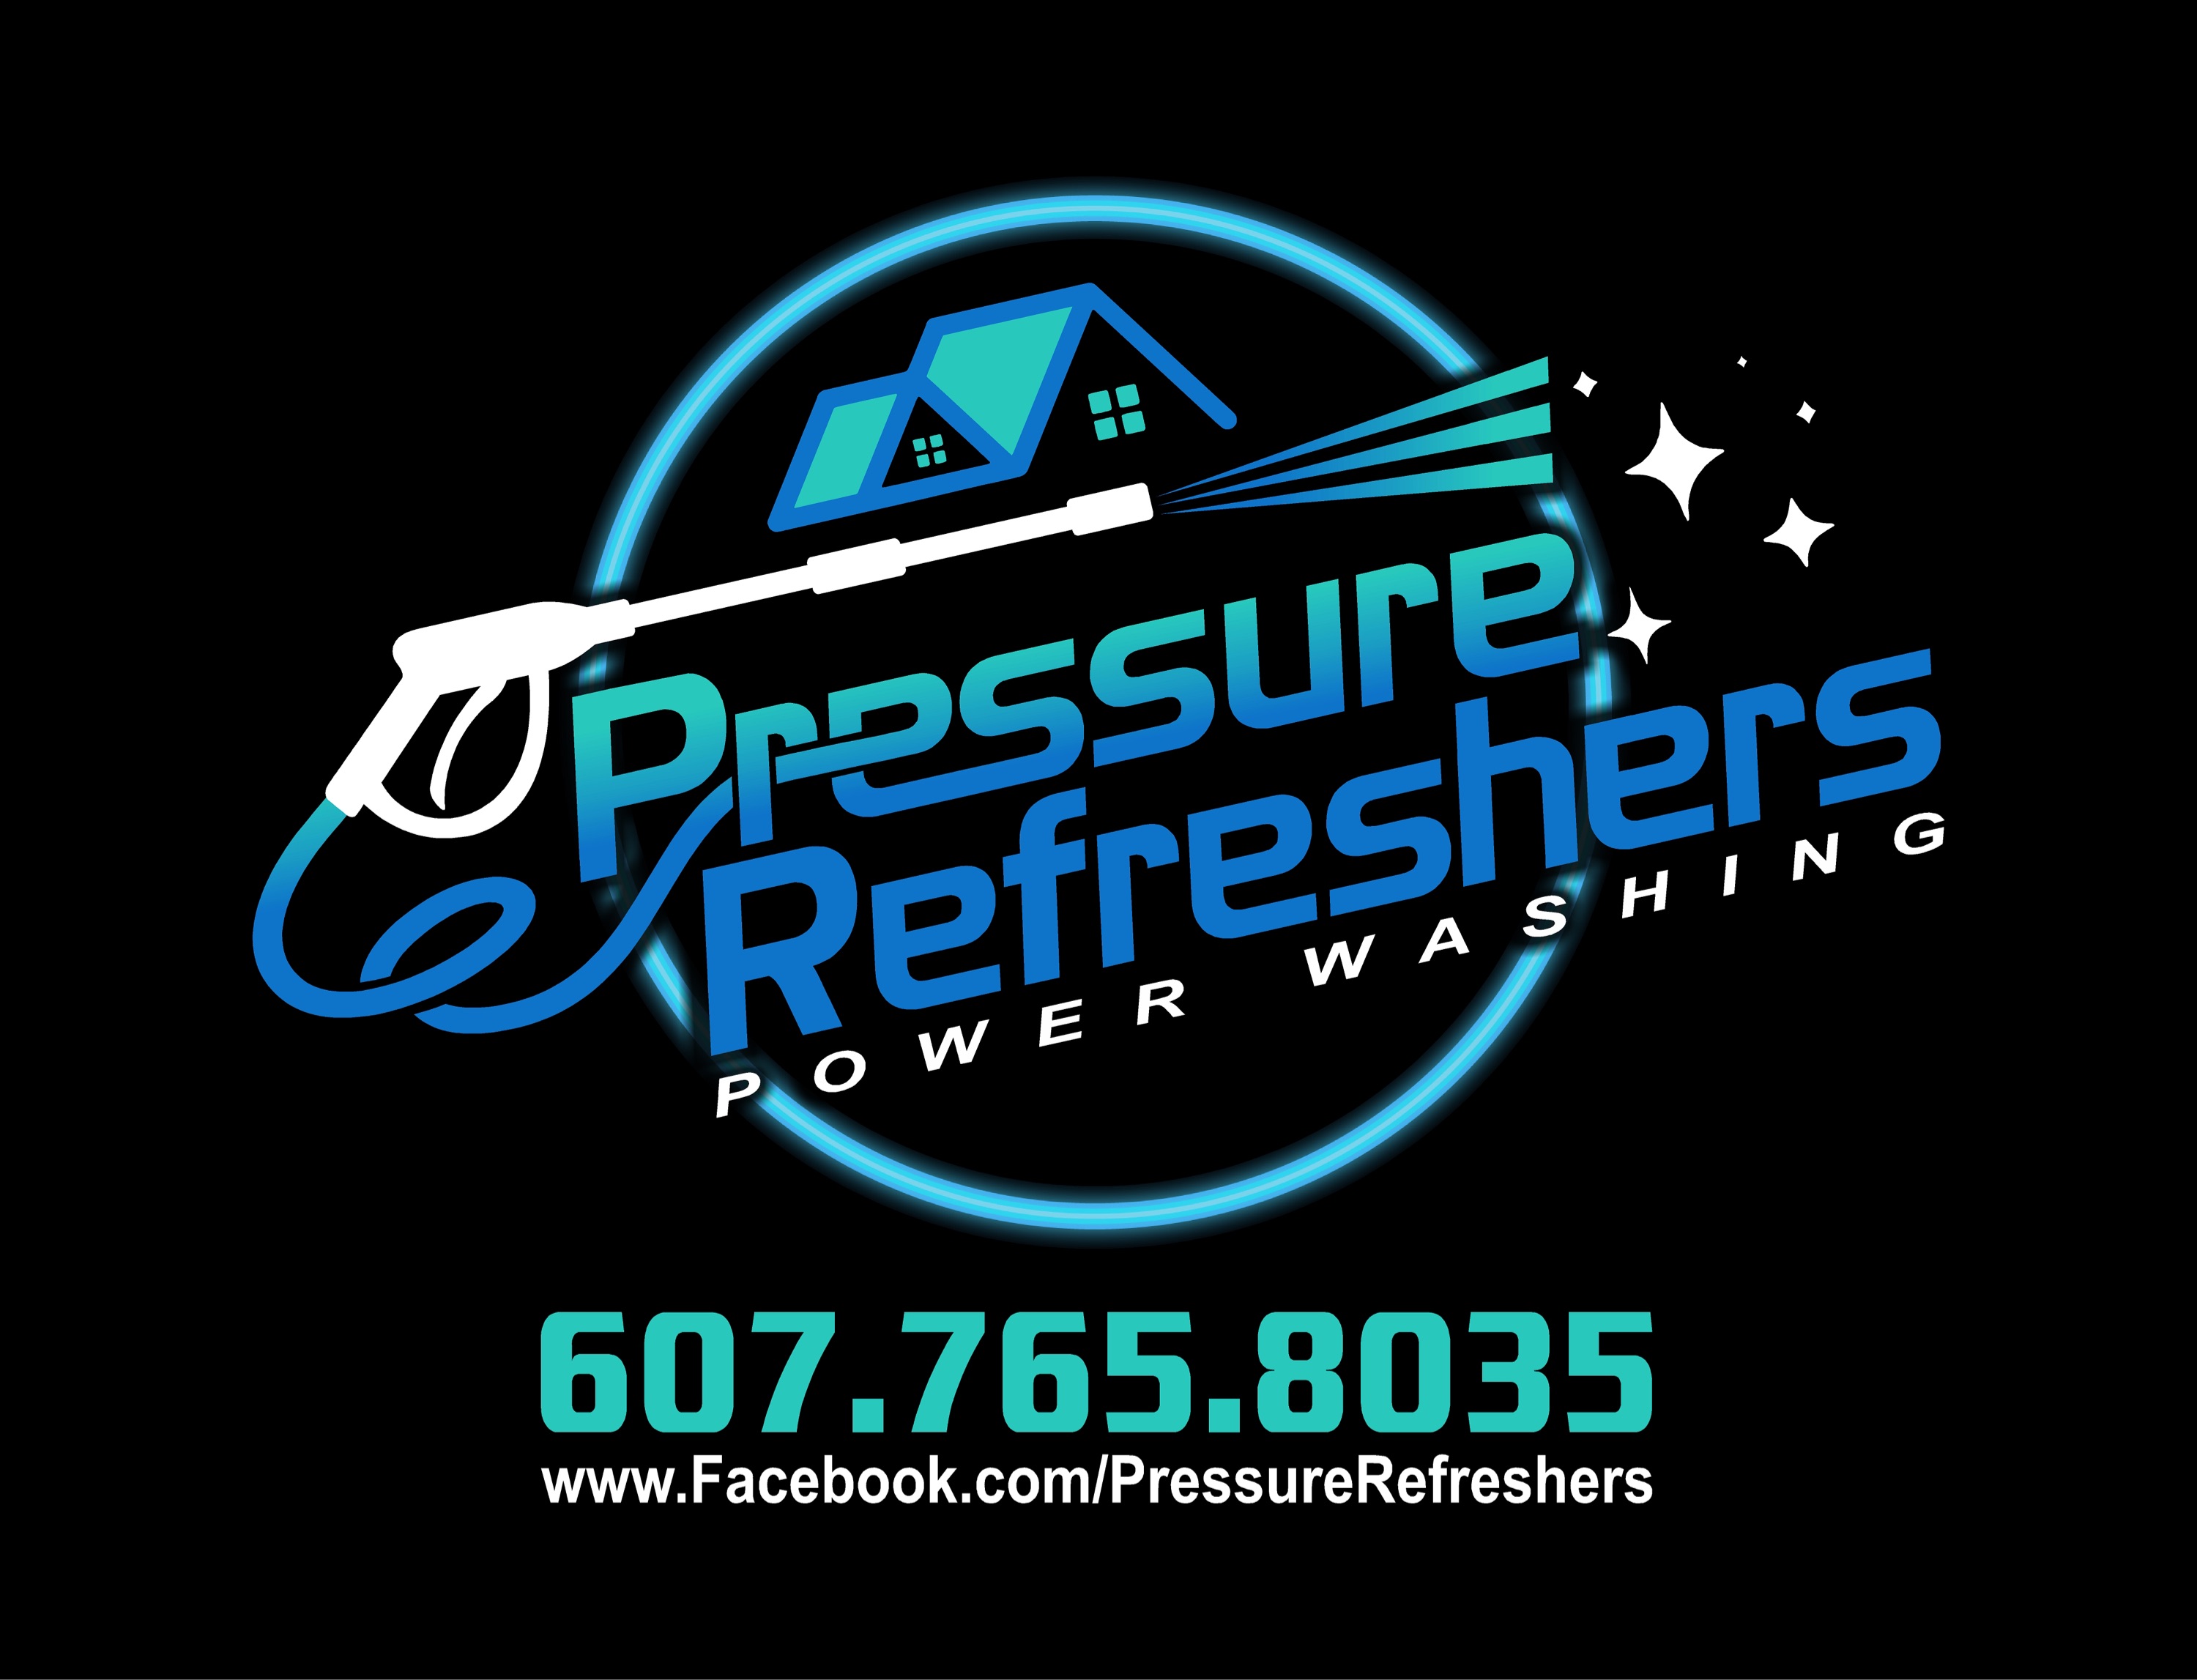 Pressure Refreshers Powerwashing Logo